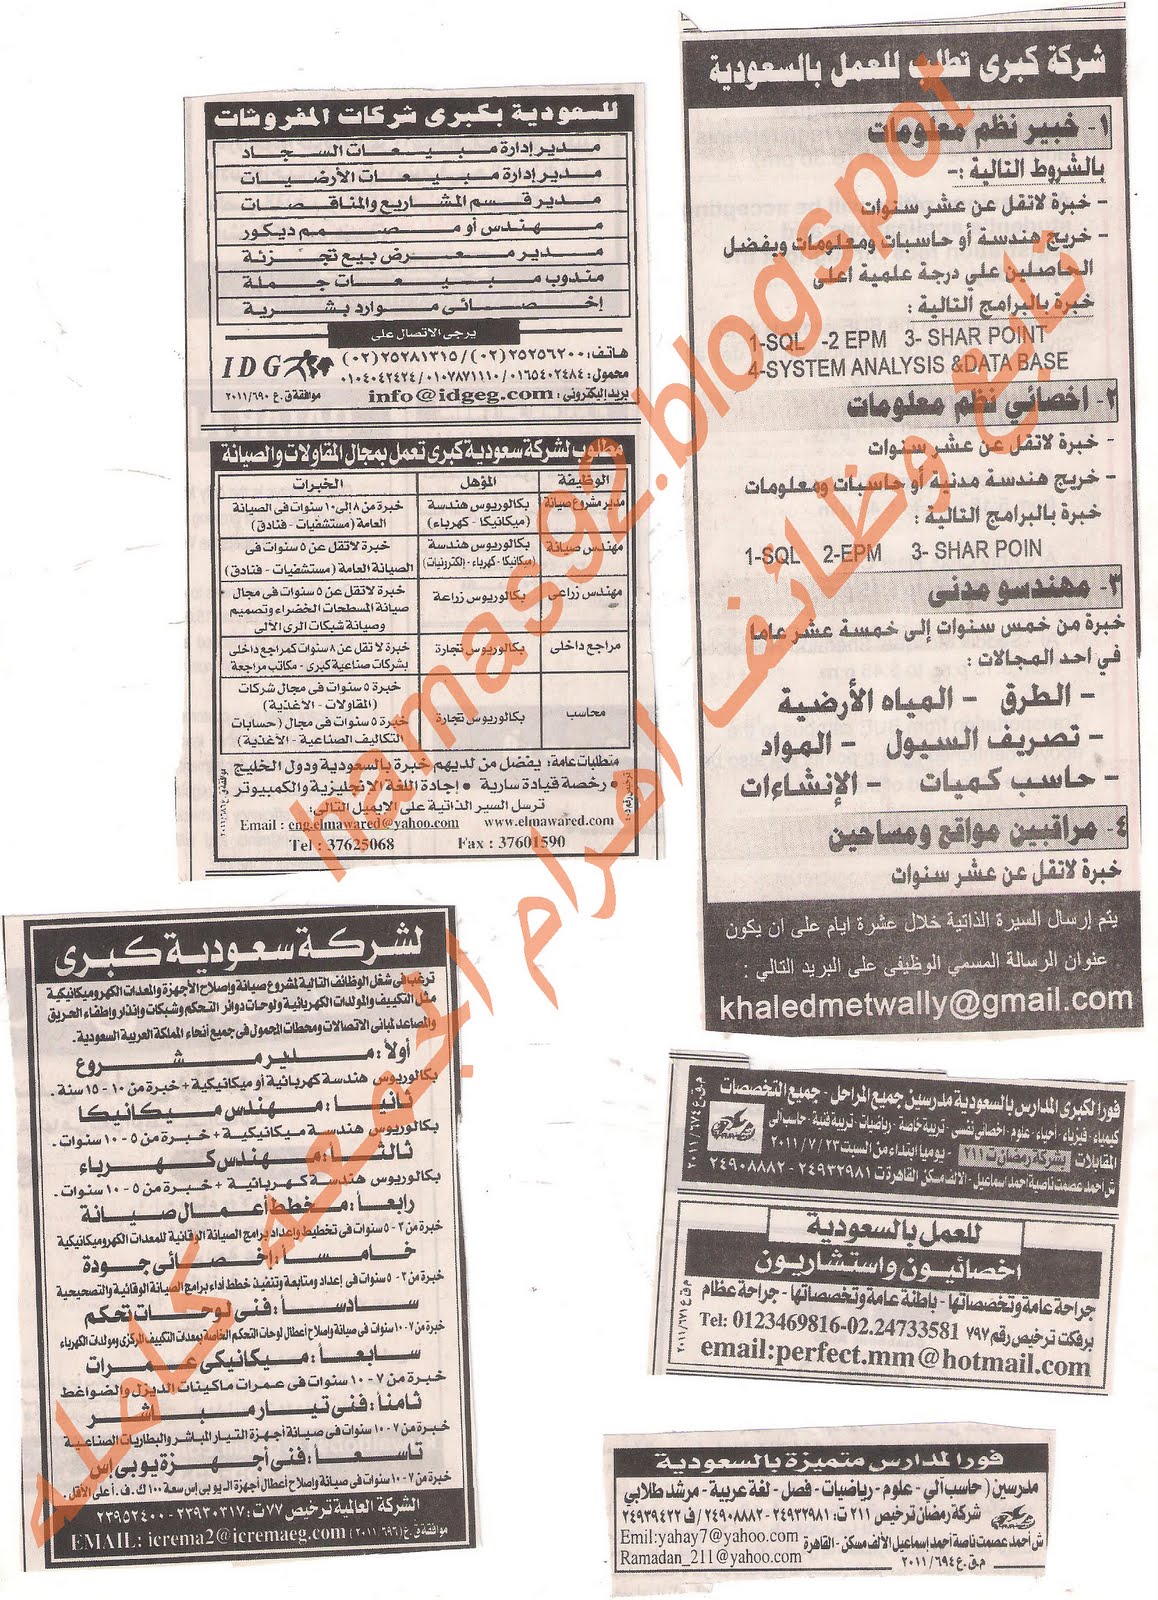 وظائف للمصريين فى السعودية من جريدة الاهرام الجمعة 22 يوليو 2011 Picture+012